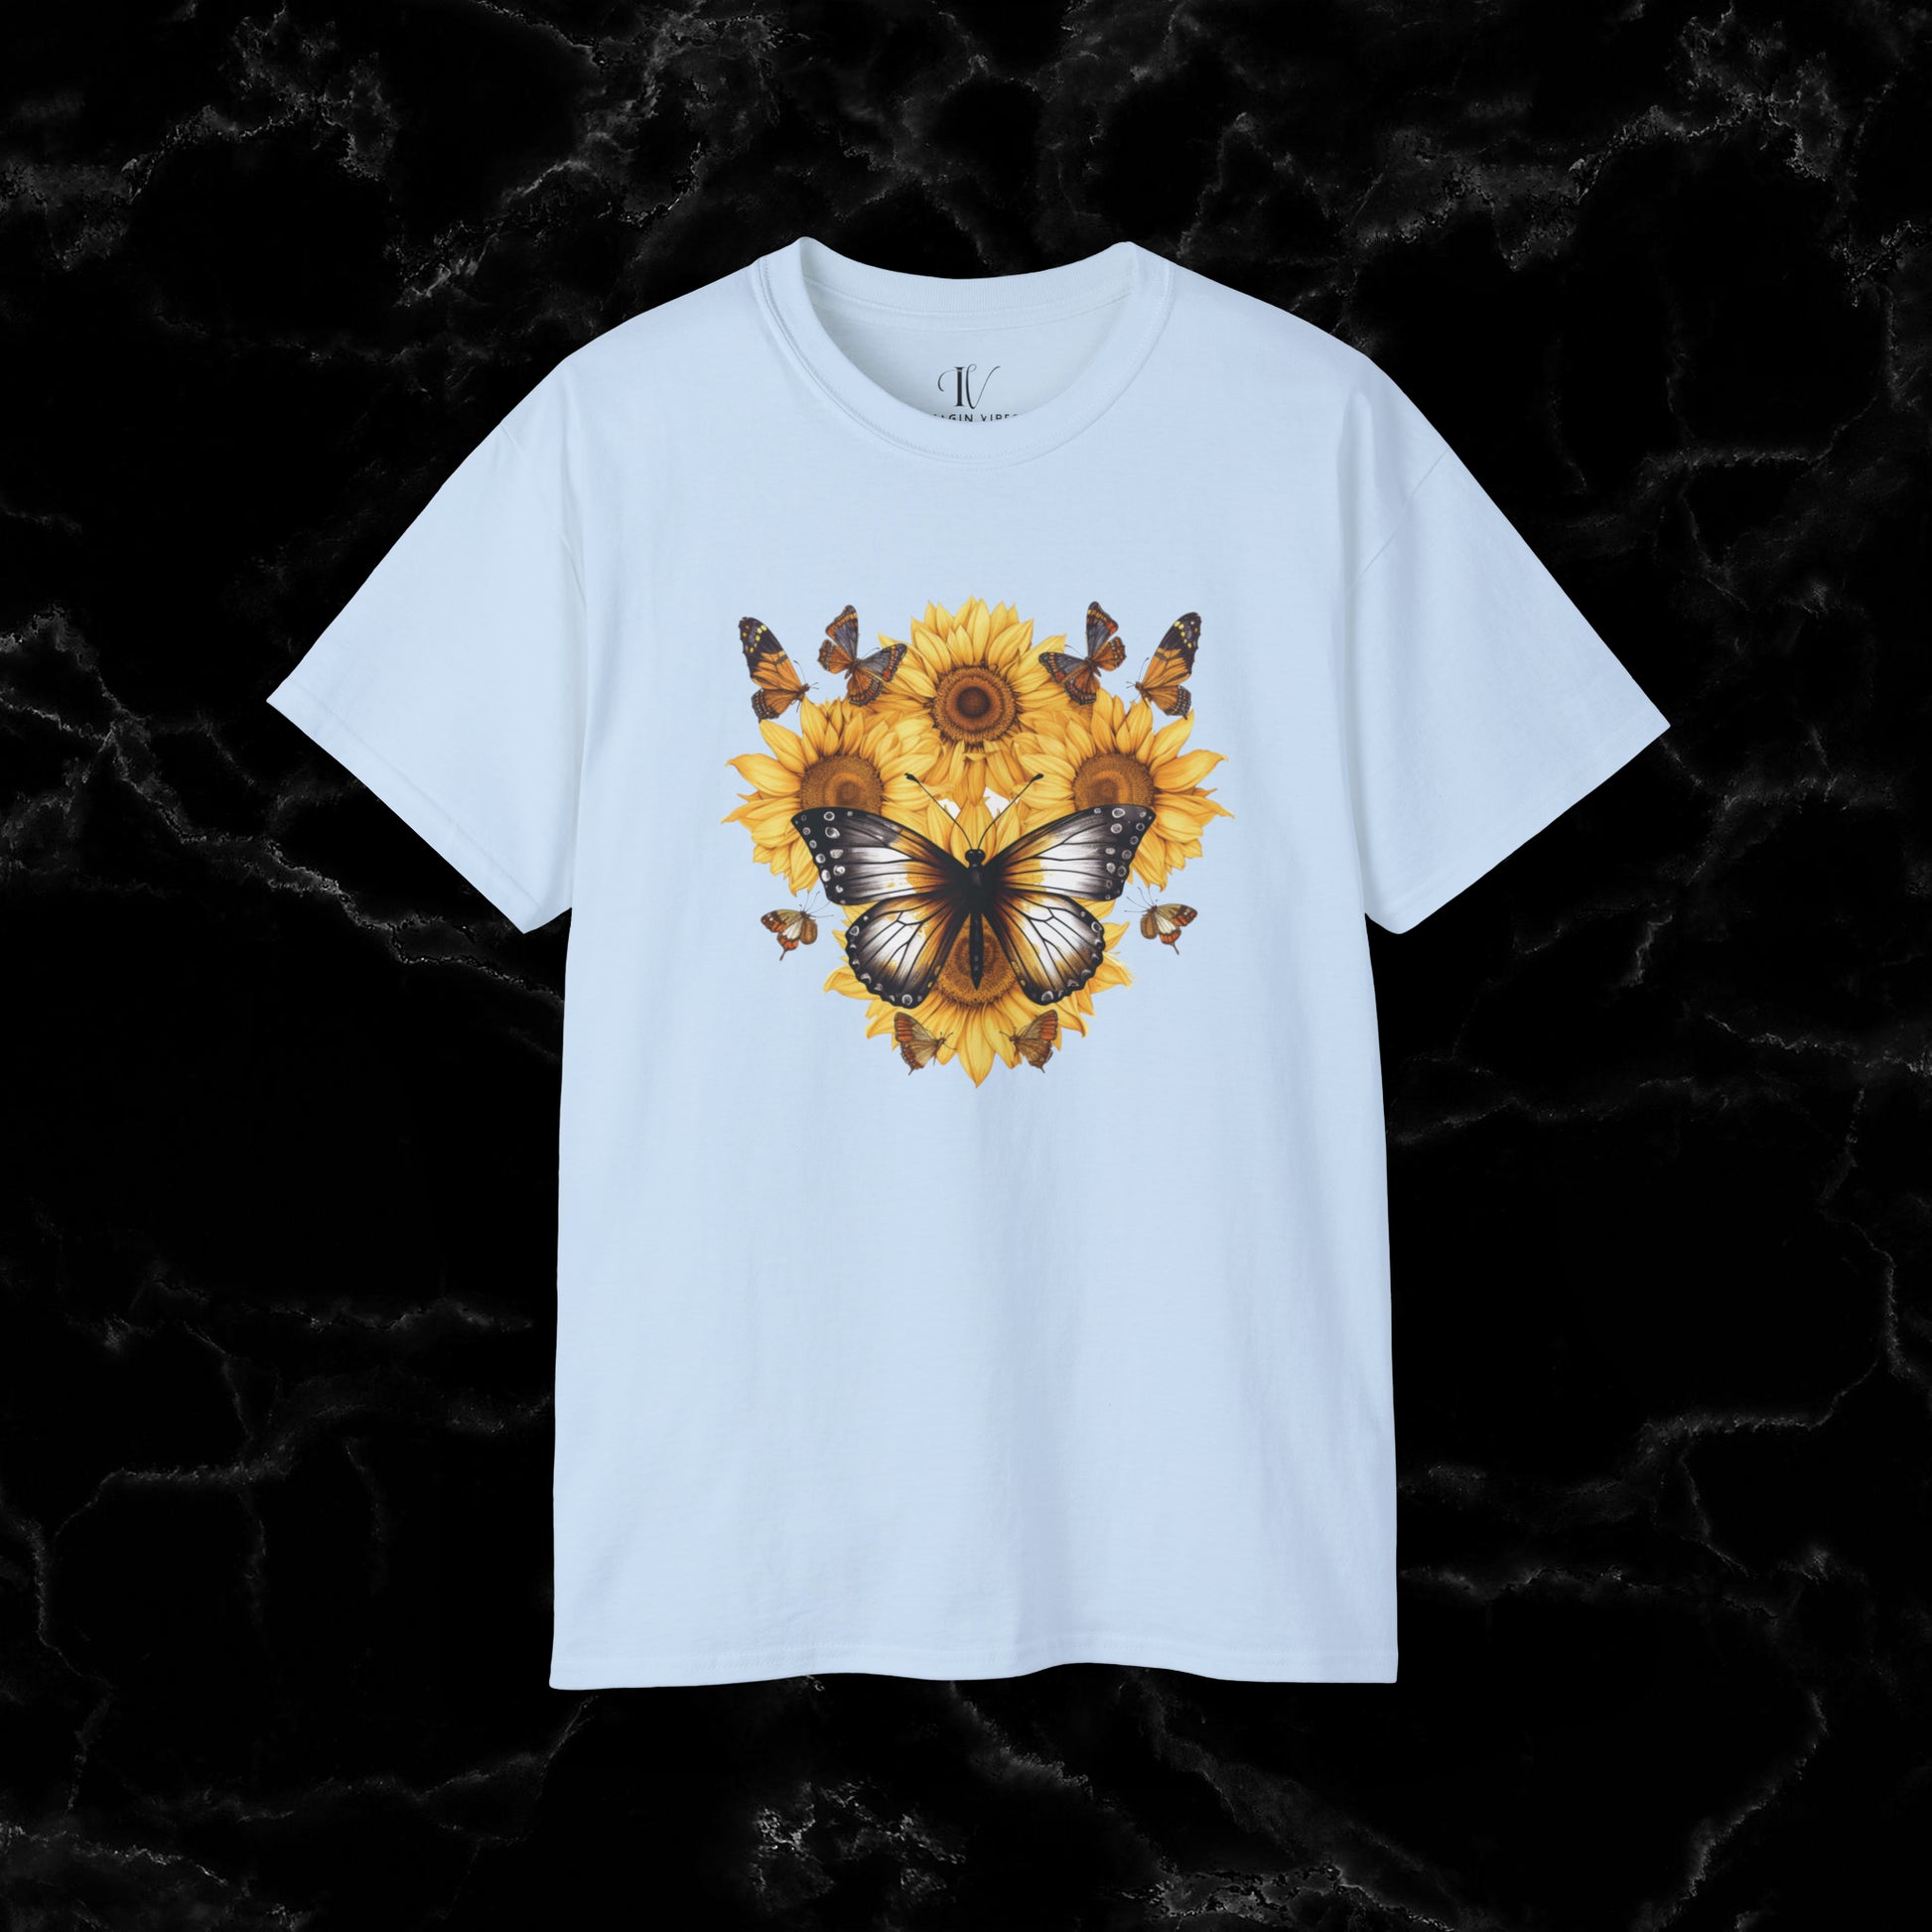 Sunflower Shirt - A Floral Tee, Garden Shirt, and Women's Fall Shirt with Nature-Inspired Design T-Shirt Light Blue S 